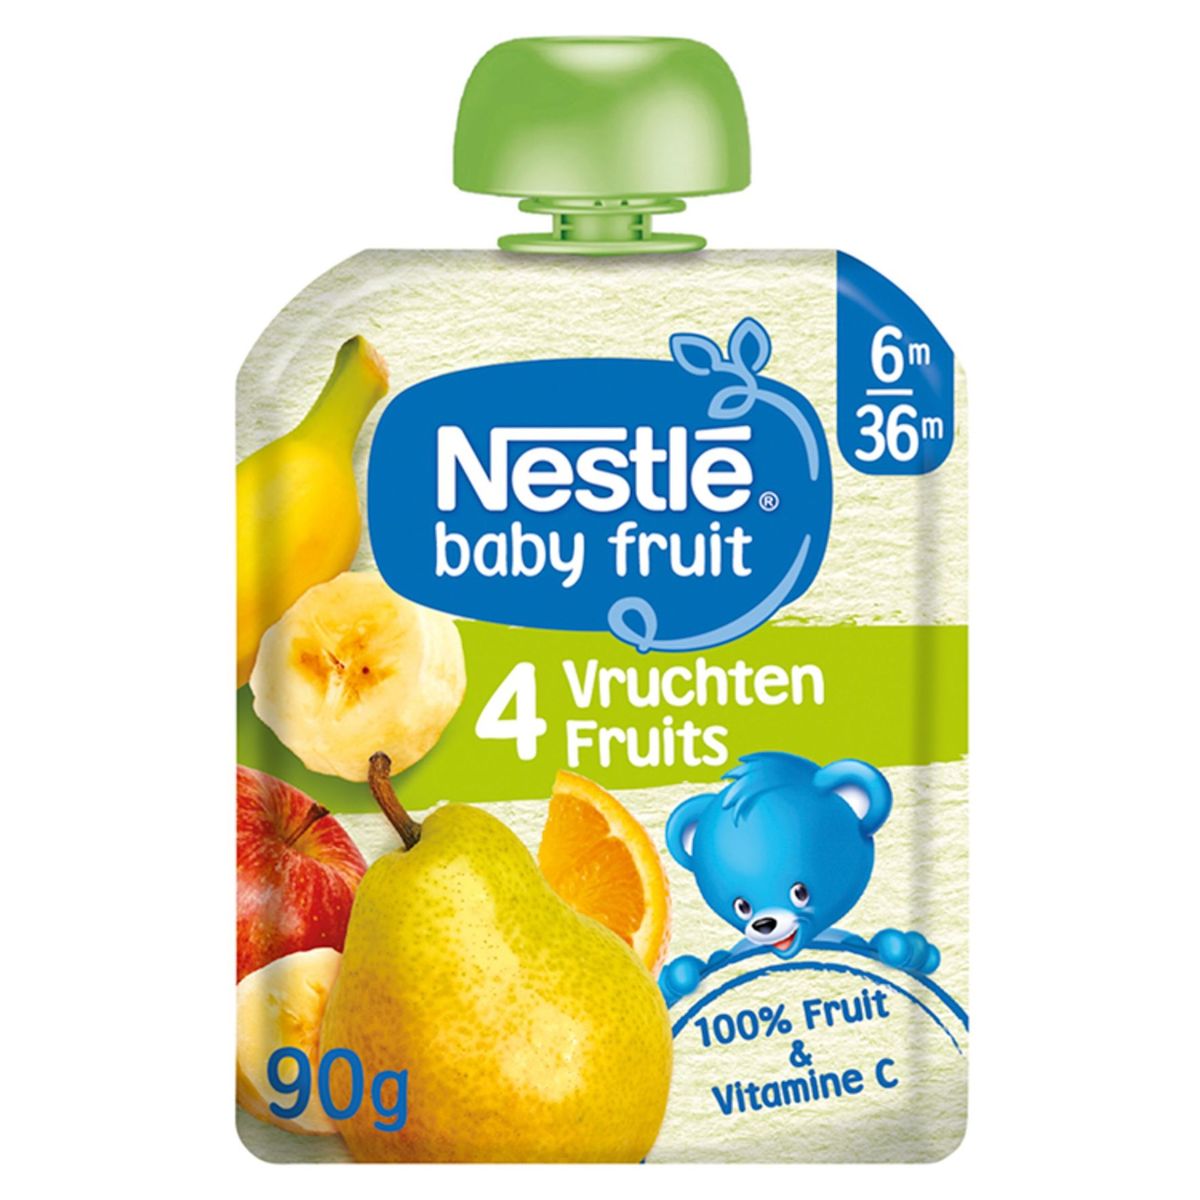 Nestlé Baby Fruit 4 Vruchten vanaf 6 maanden knijpzakje 90g